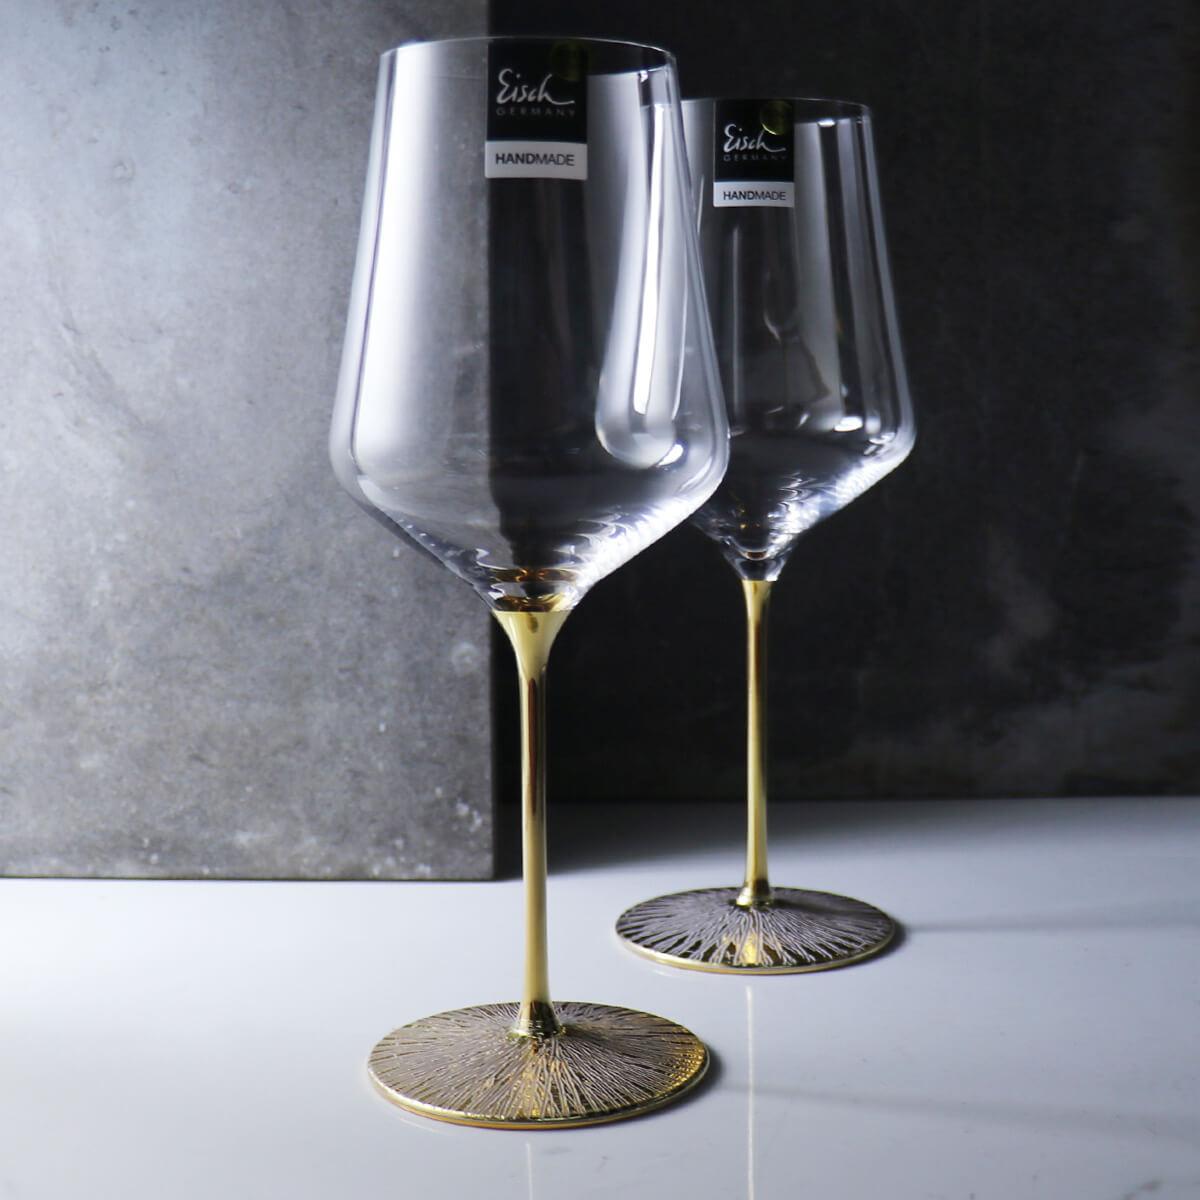 (一對價)620cc【牽手約定】德國Eisch埃及金24K Ravi Gold金色婚禮對杯 紅酒杯 - MSA玻璃雕刻